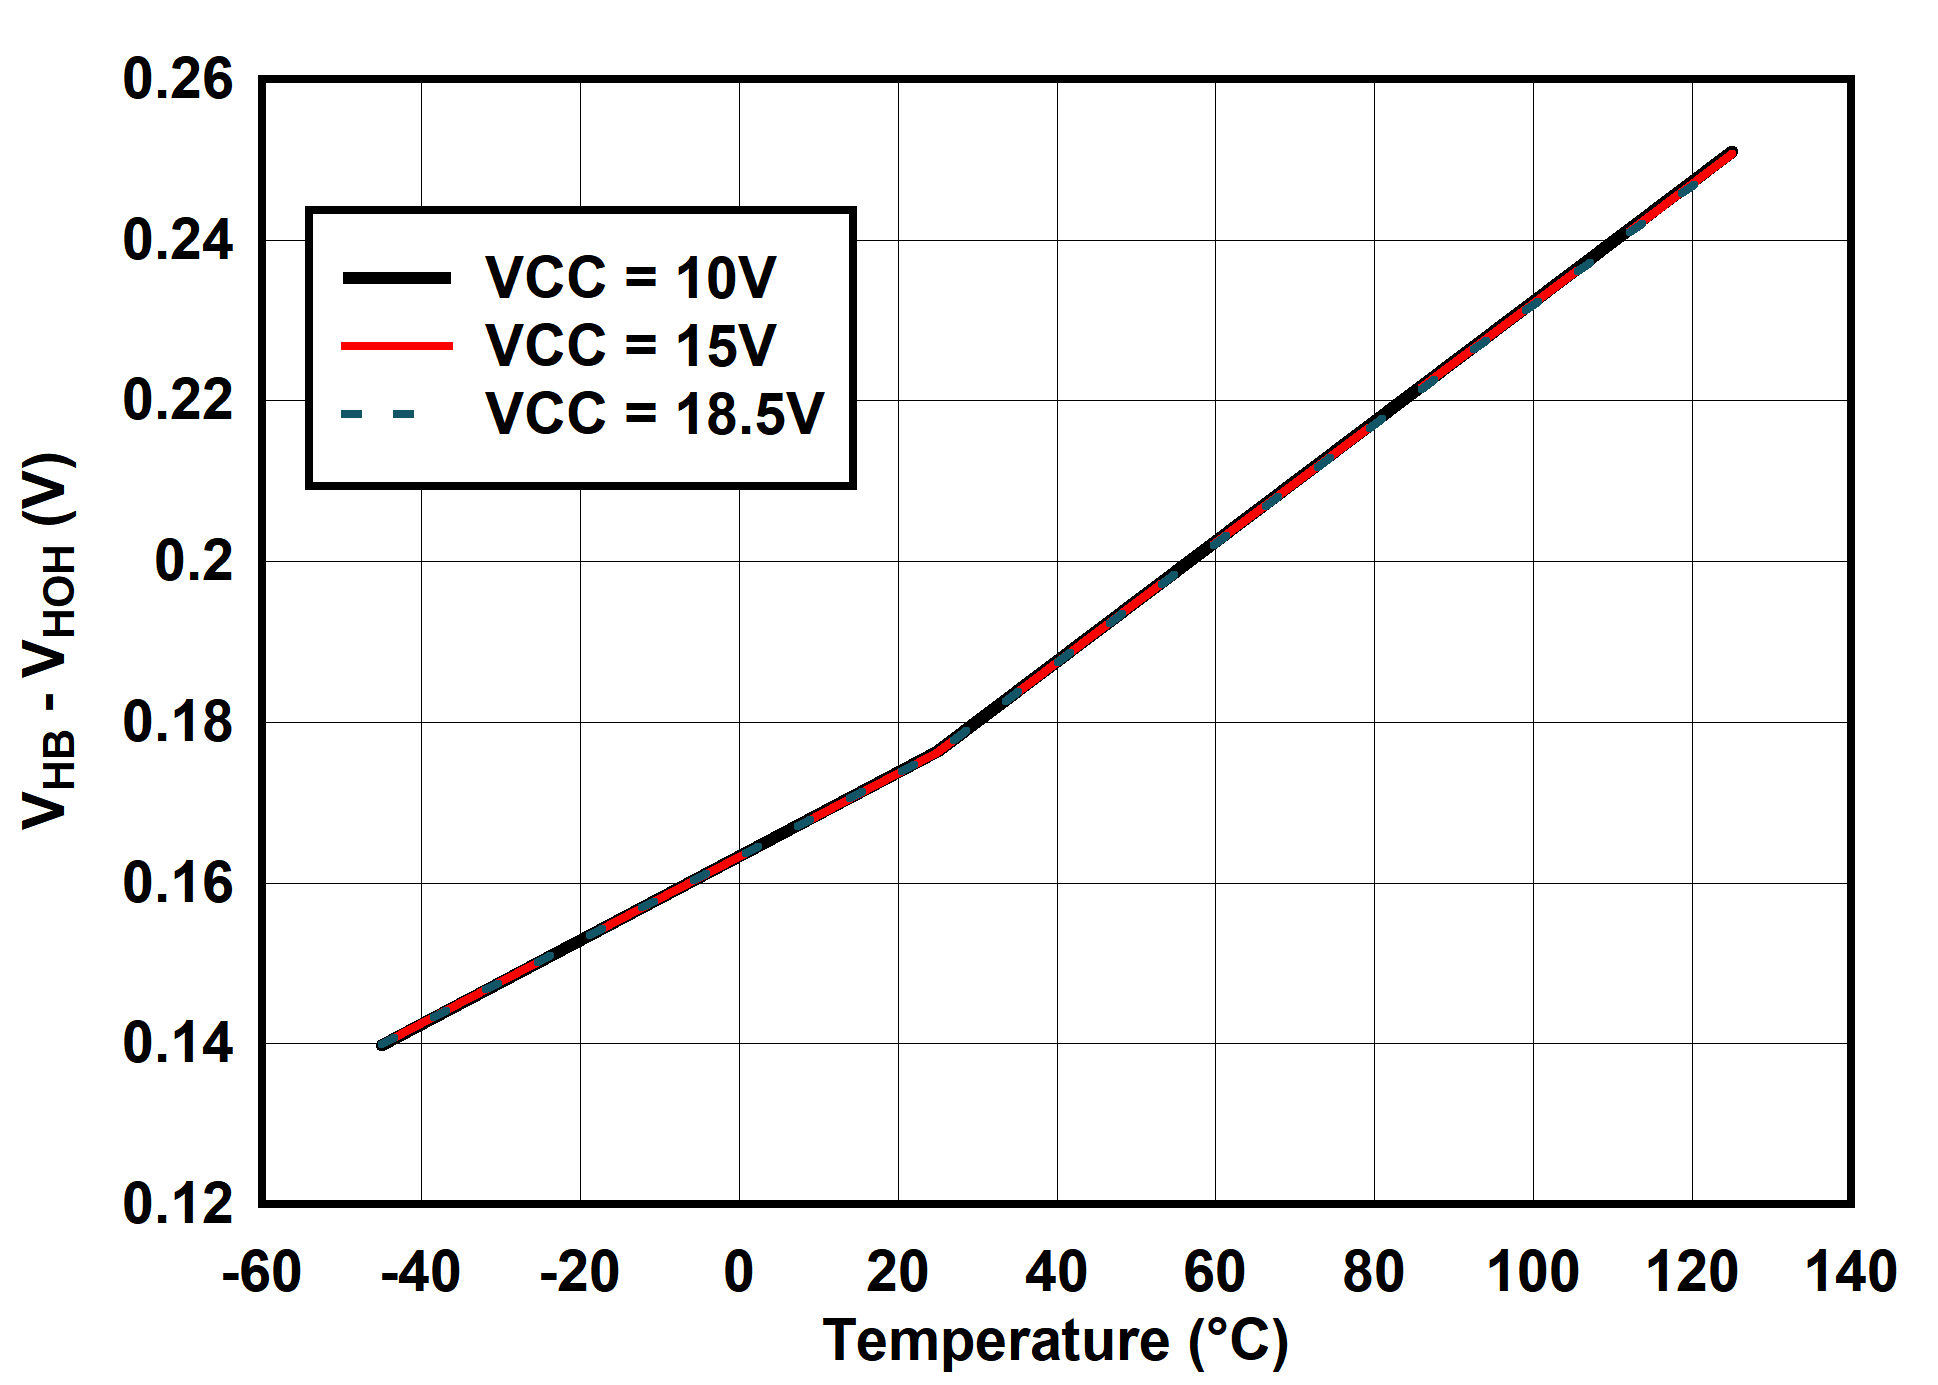 UCC25660 (VHB - VHOH) vs Temperature